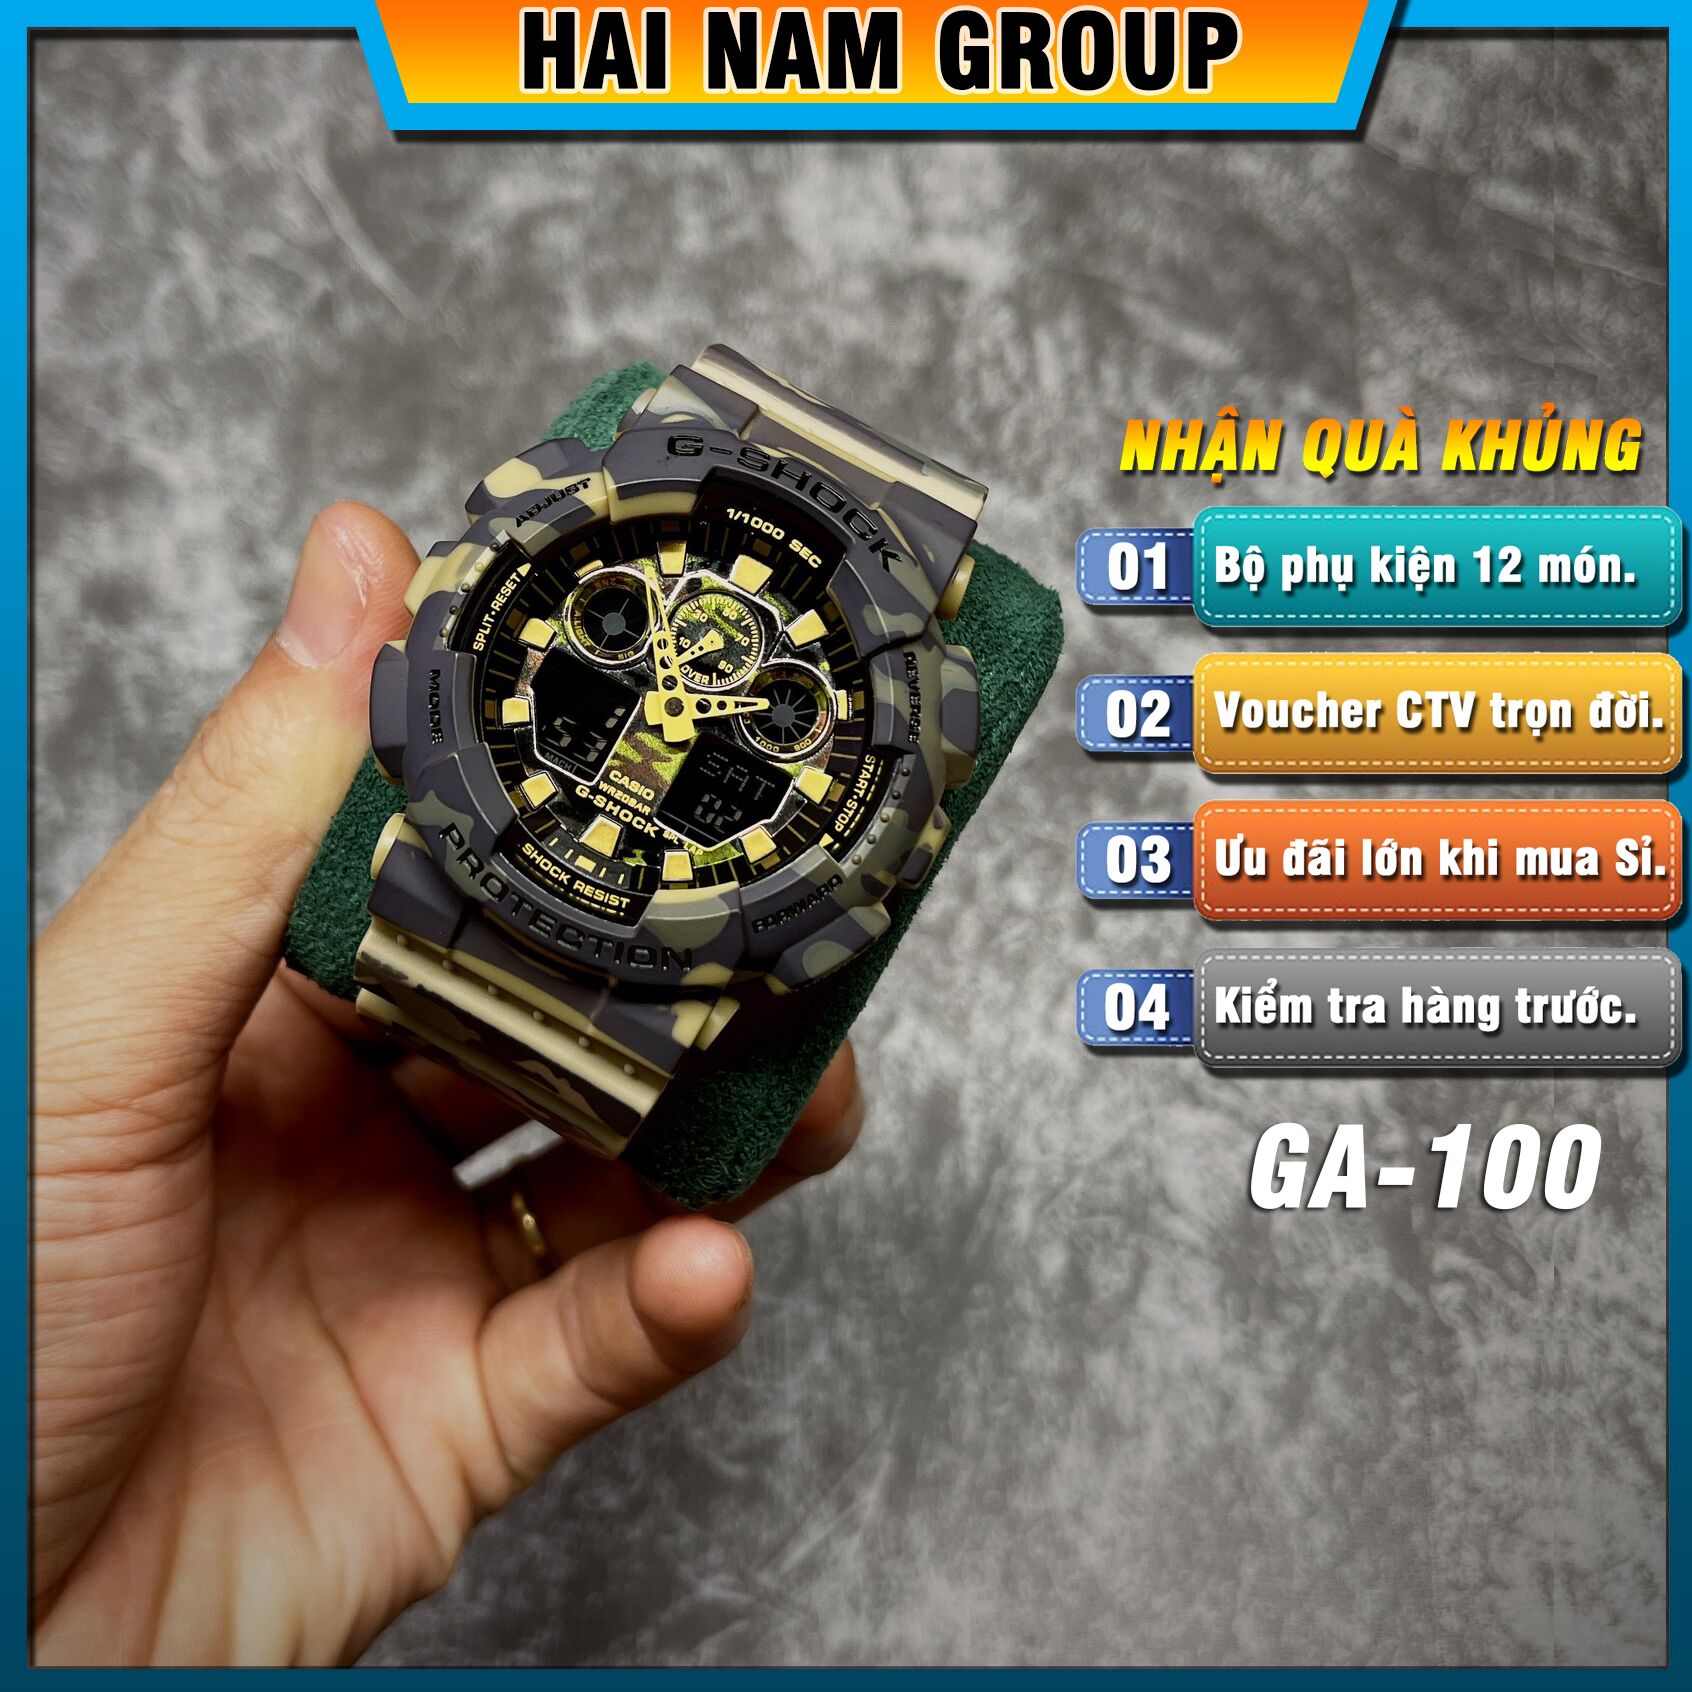 Đồng hồ nam nữ G-SHOCK GA-100CM-5A REP 1:1 Camo Xanh Lá tại Hải Nam Group 1